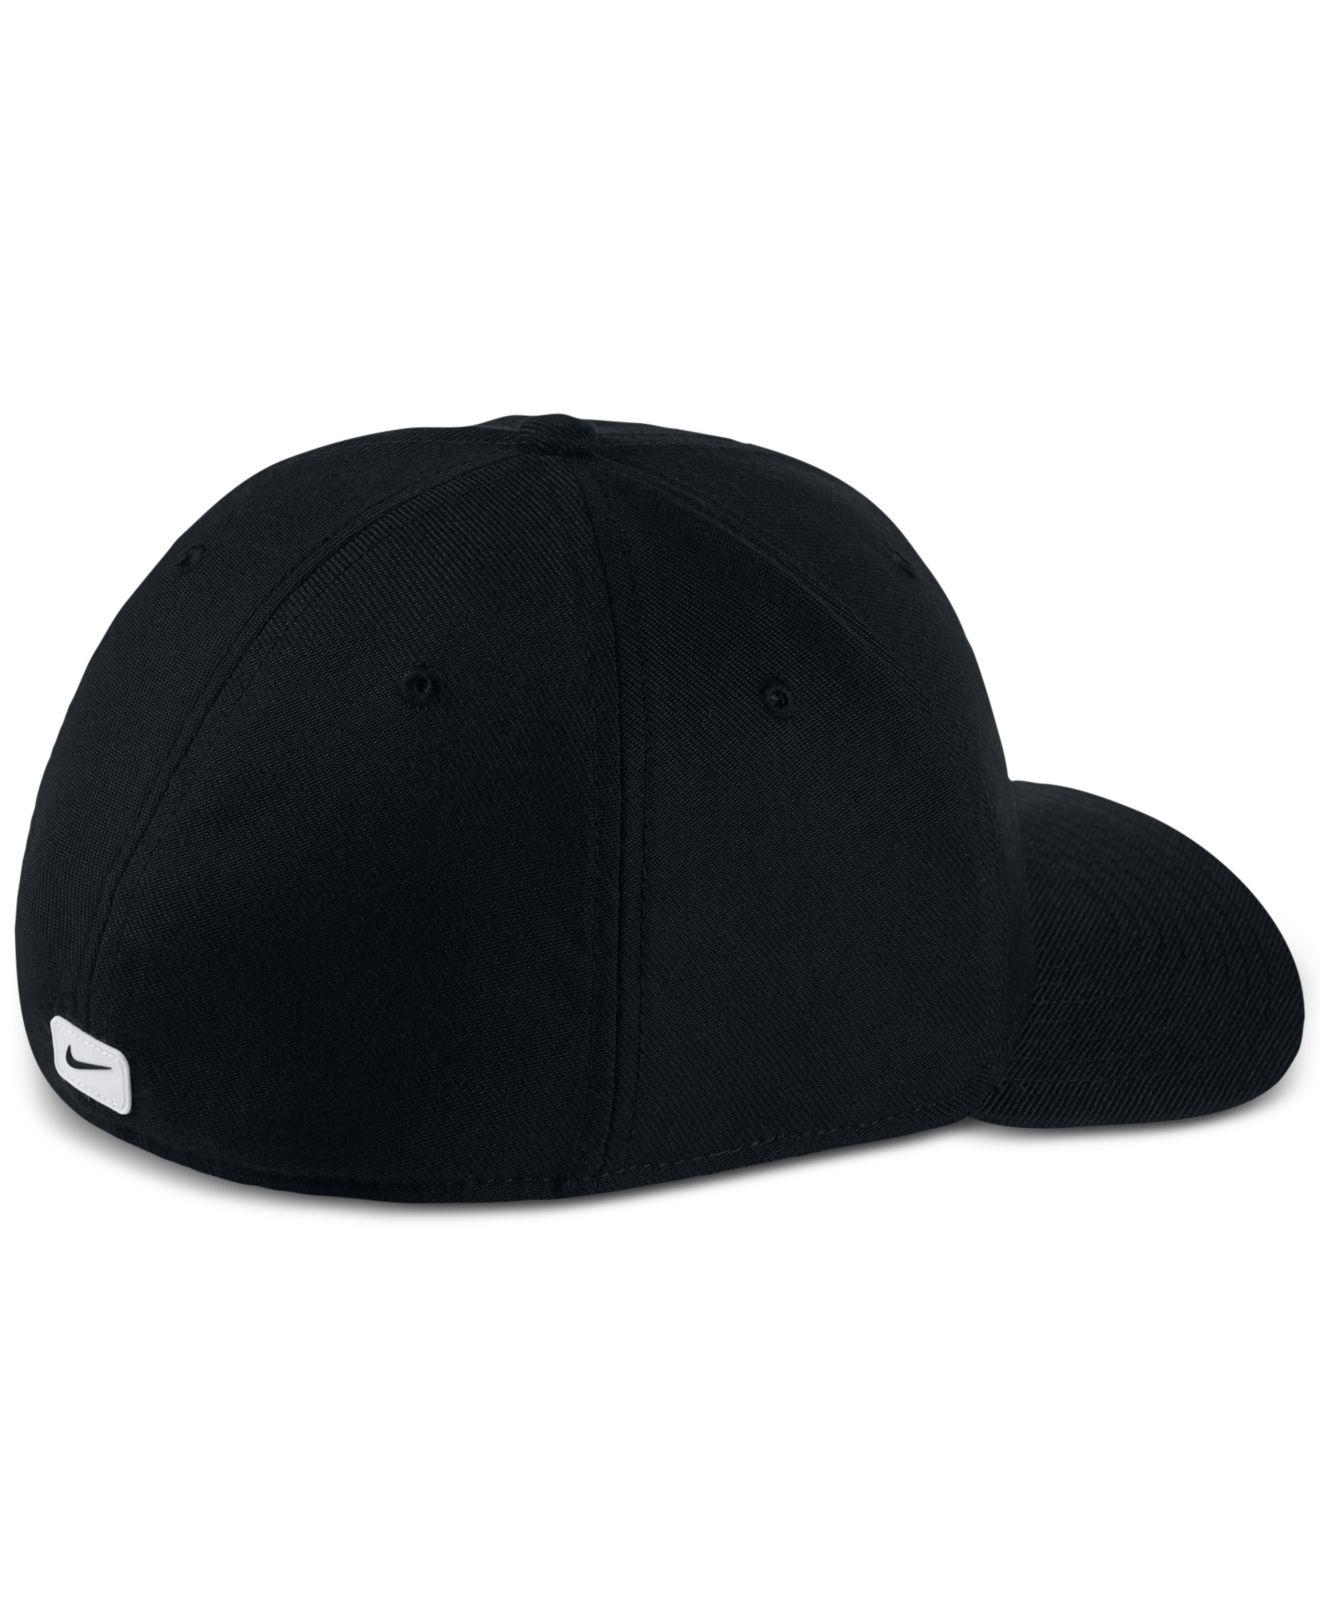 Nike Synthetic Sportswear Dri-fit Stretch Fit Hat in Black for Men - Lyst